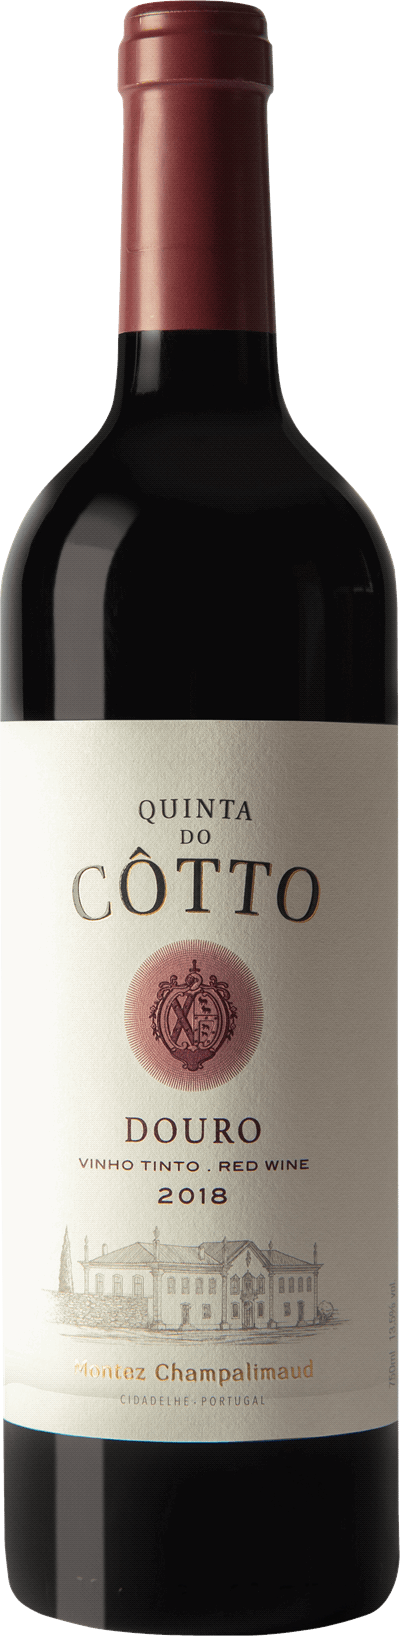 Produktbild för Quinta do Côtto